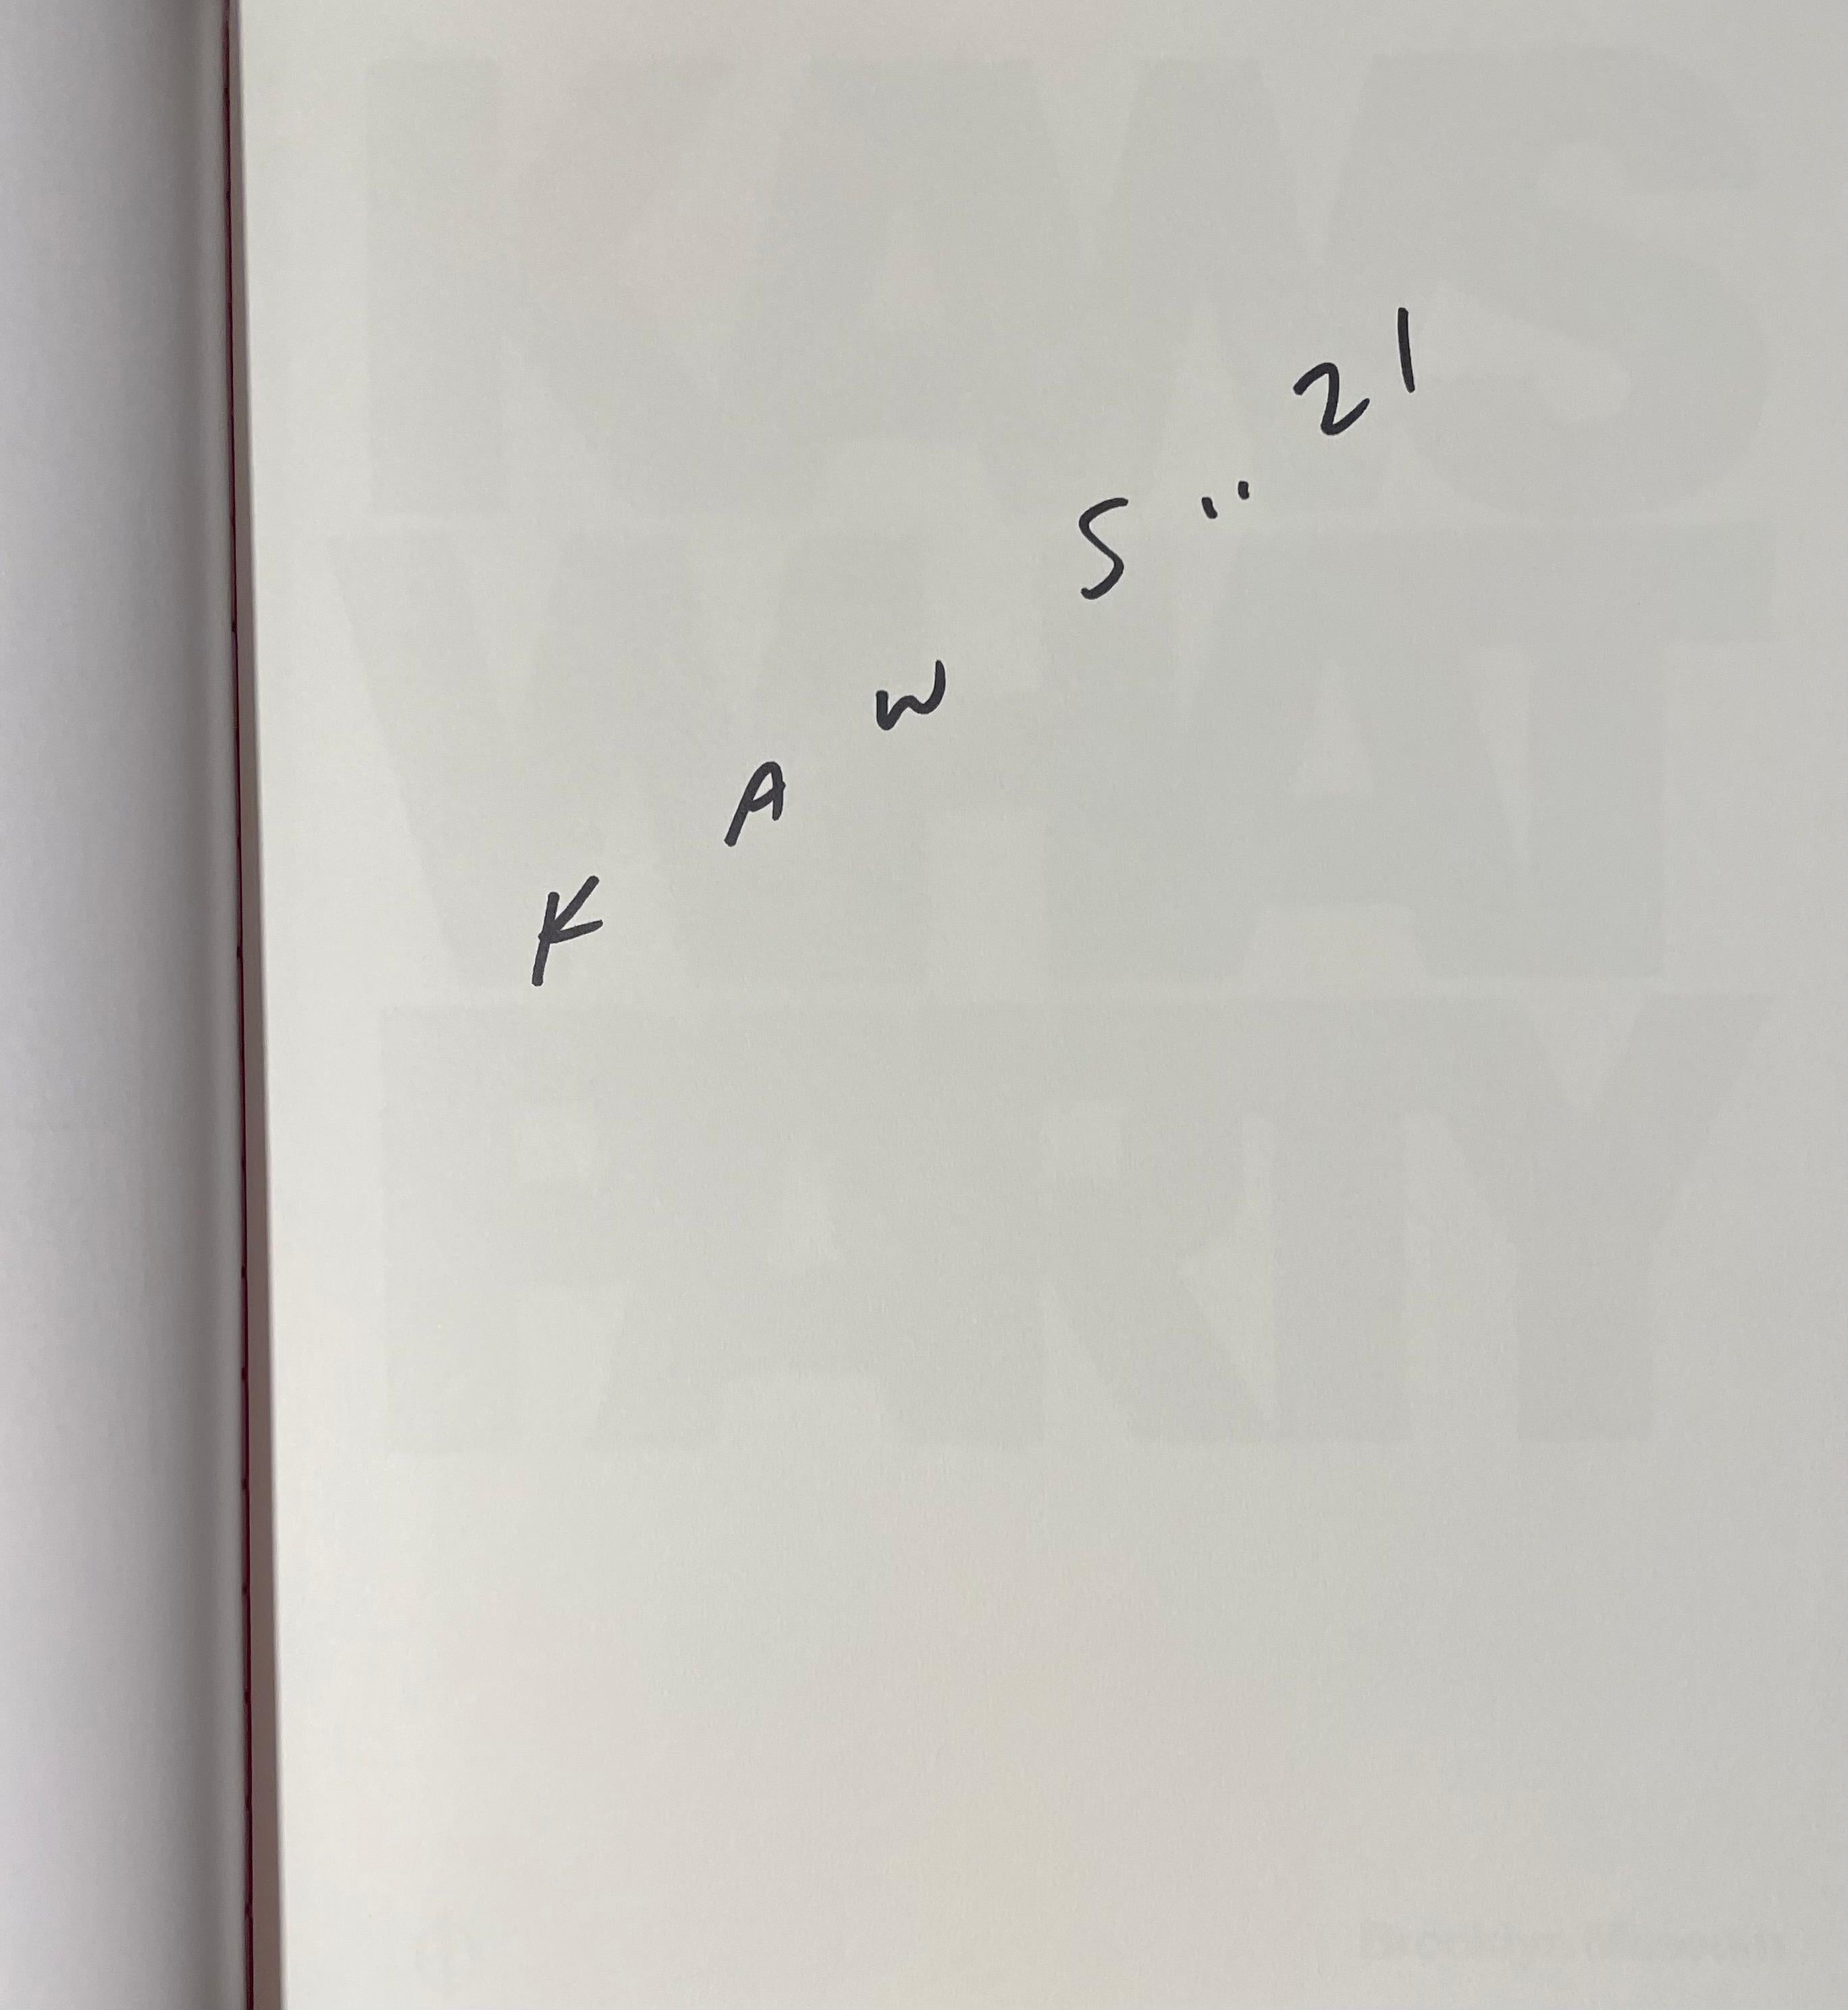 Condit :
Le livre est en parfait état et n'a été ouvert que pour photographier la signature.
Signature :
Signé à la main par l'artiste, Signé à la main par l'artiste au Sharpie noir, KAWS 2021...
Certificat d'authenticité
Inclus (délivrés par la